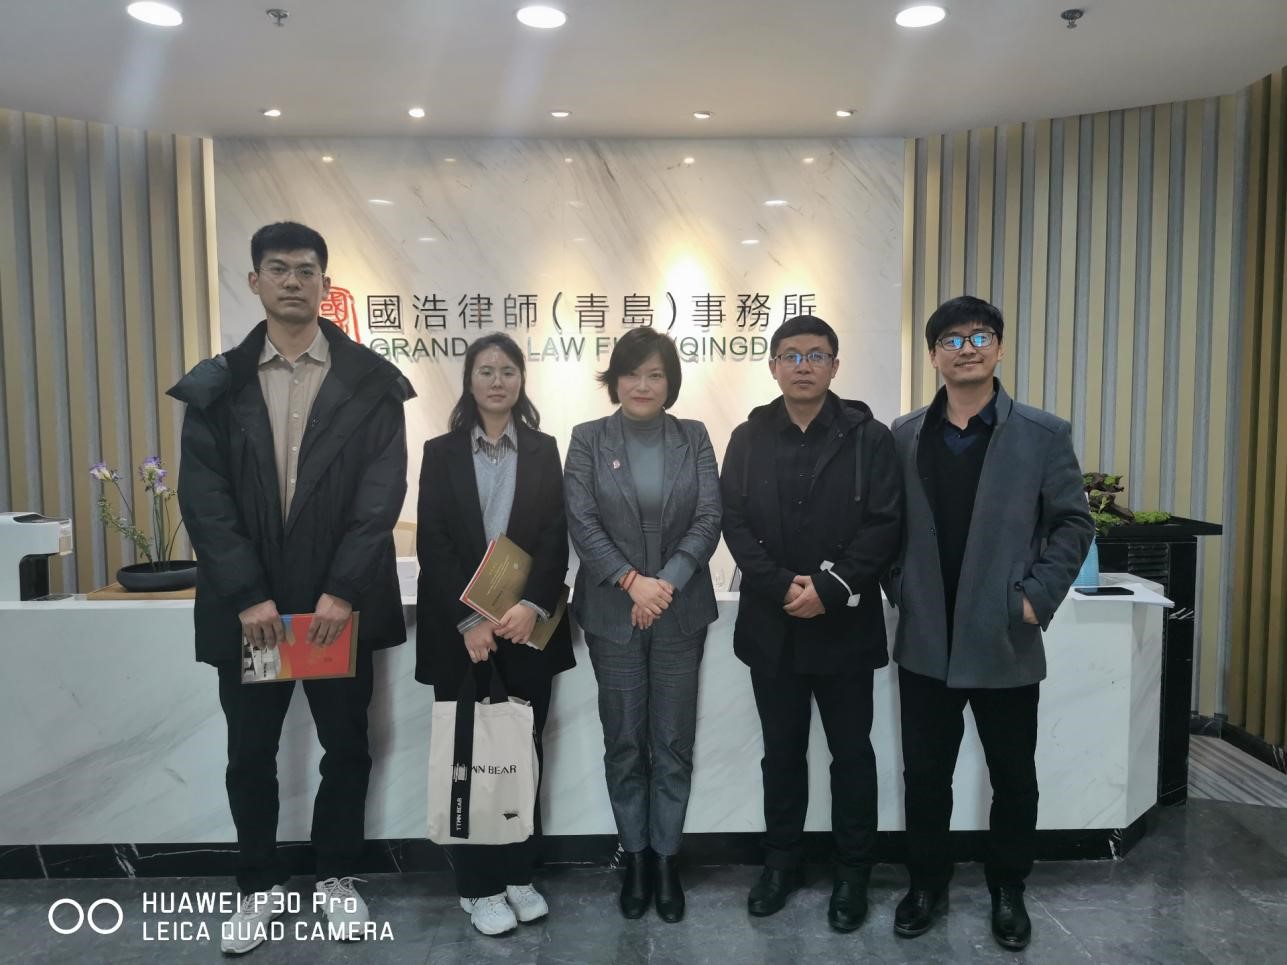 中日韩法学研究中心成员参访国浩律师事务所